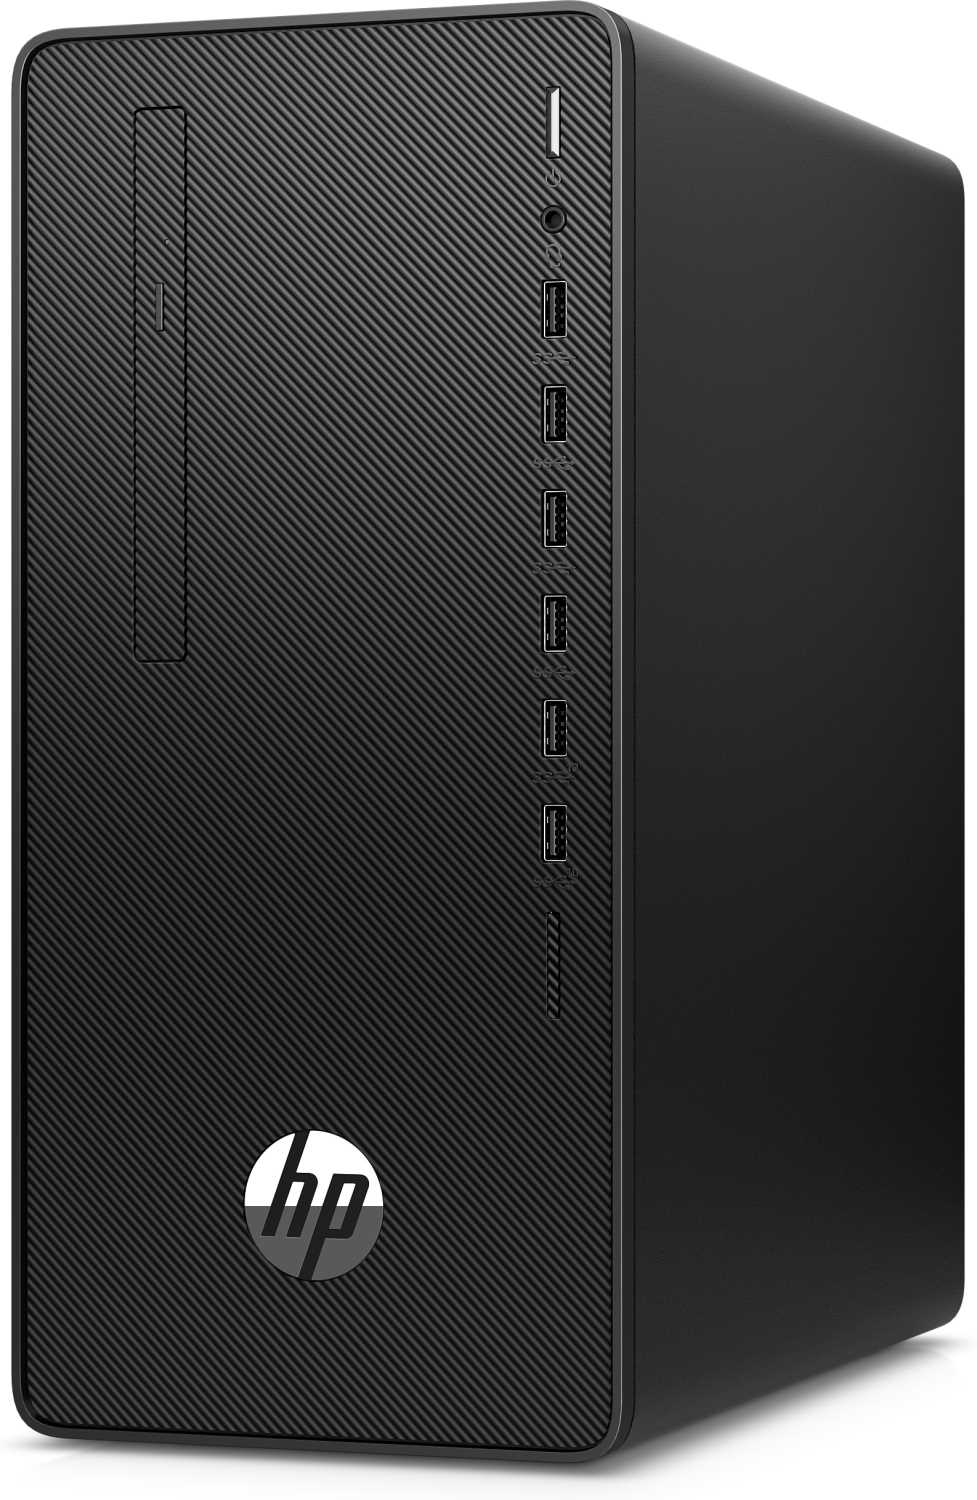 HP 290 G4 MT / i3- 10100 / 8GB / 256GB SSD / W10p64 / DVD-WR / 1yw / kbd / Opt Mouse / Speakers / Sea and Rail